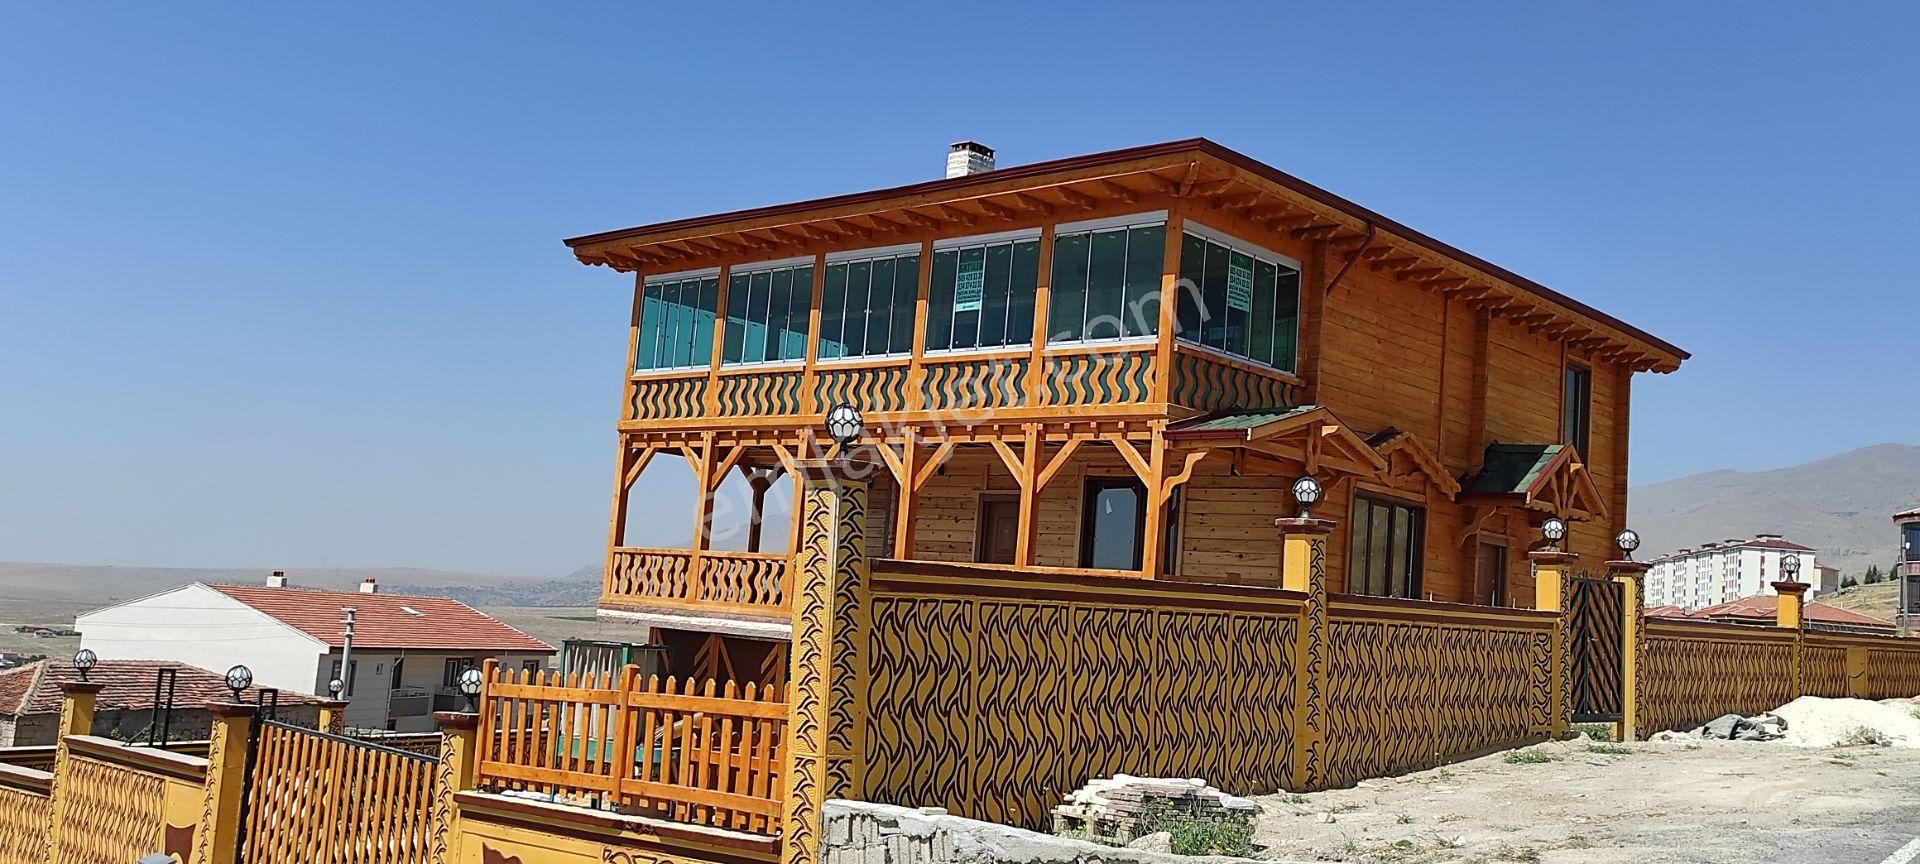 Niğde Merkez Koyunlu Köyü (Yukarı) Satılık Villa  EMSALİ OLMAYAN AHŞAP VİLLA